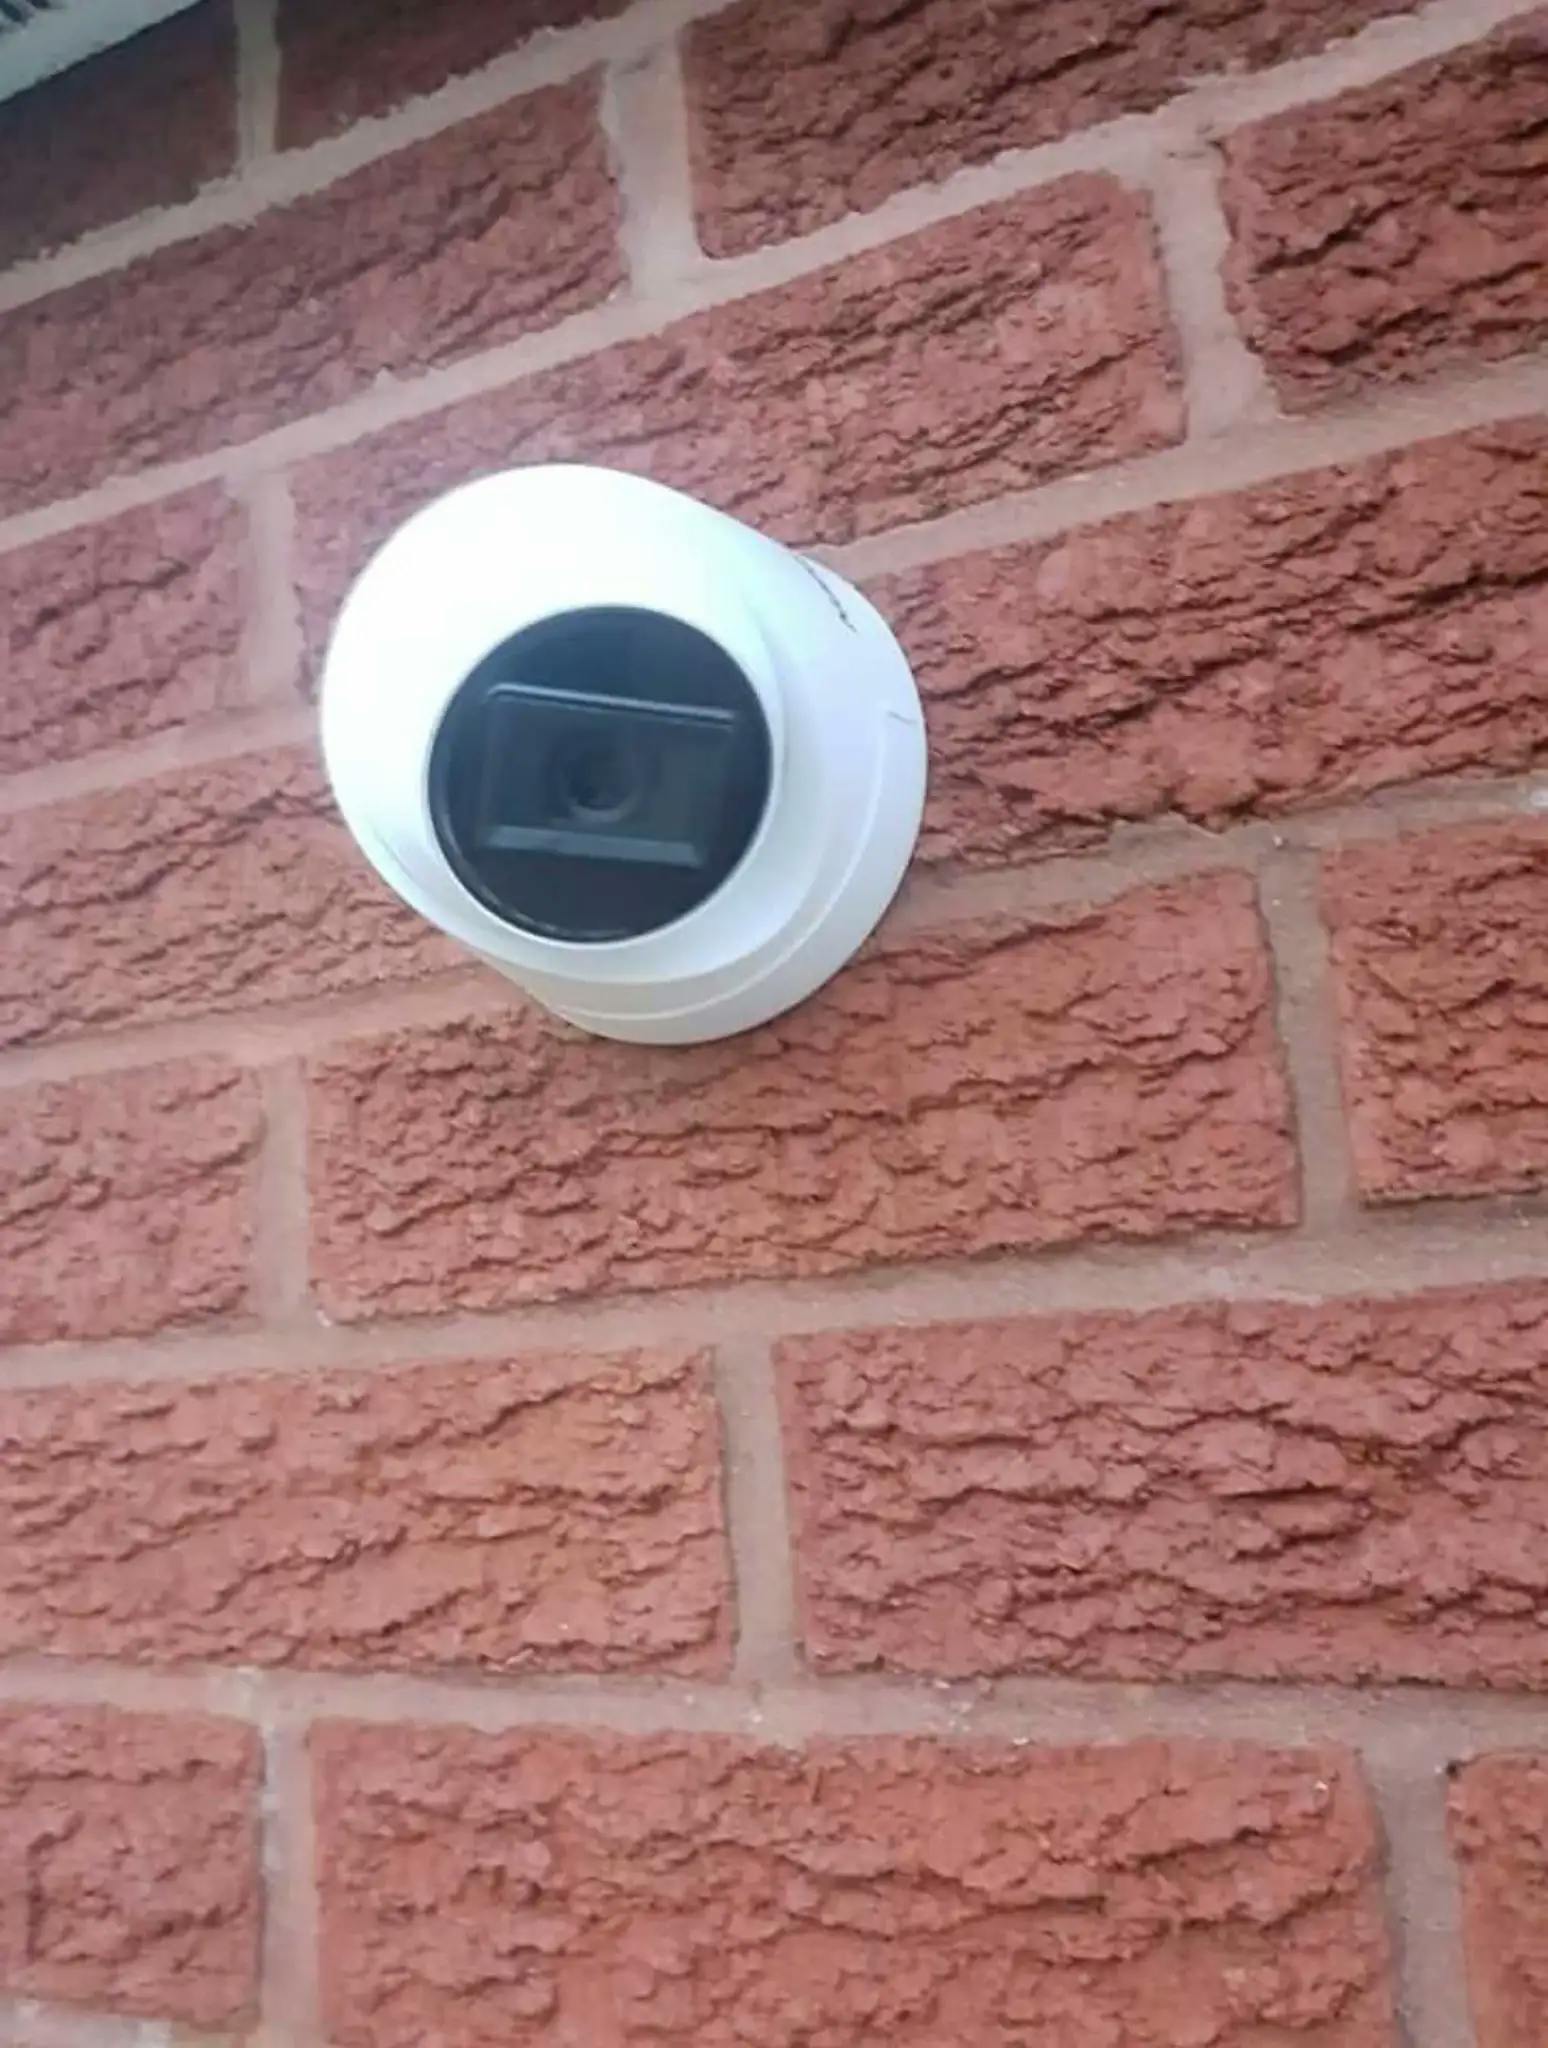 Domestic CCTV Derbyshire